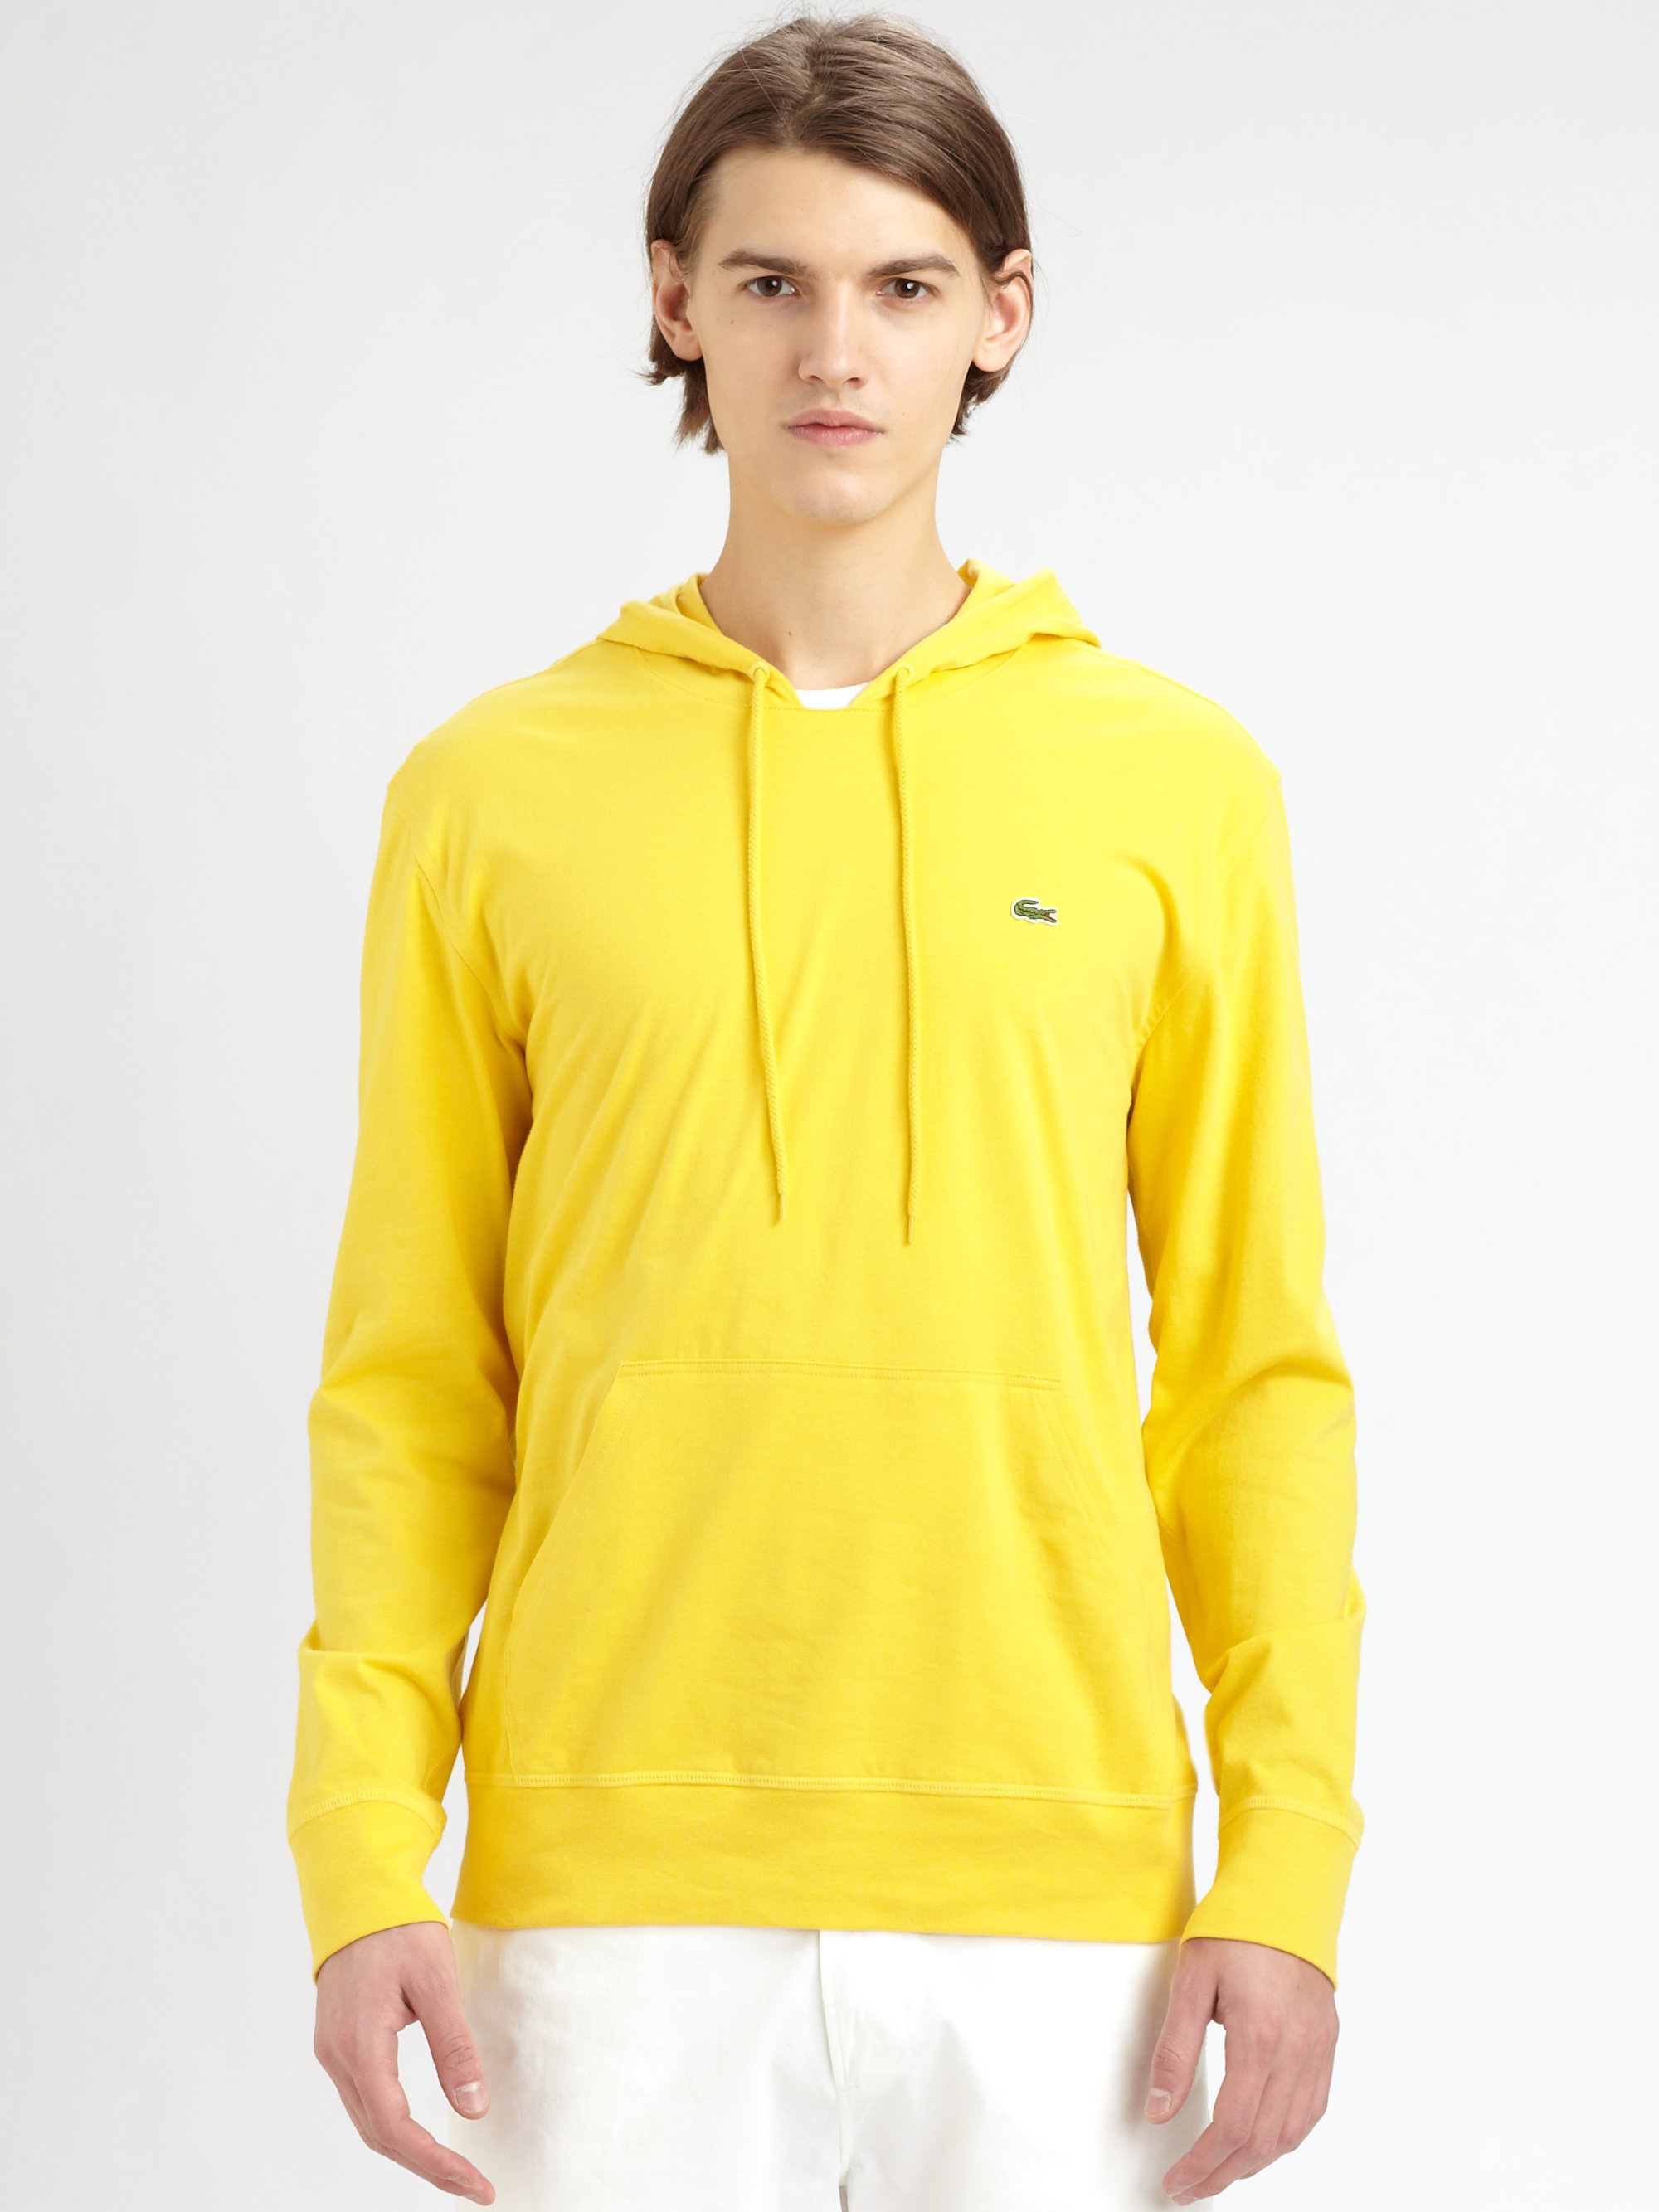 Lacoste Hooded Sweatshirt in Yellow for Men - Lyst